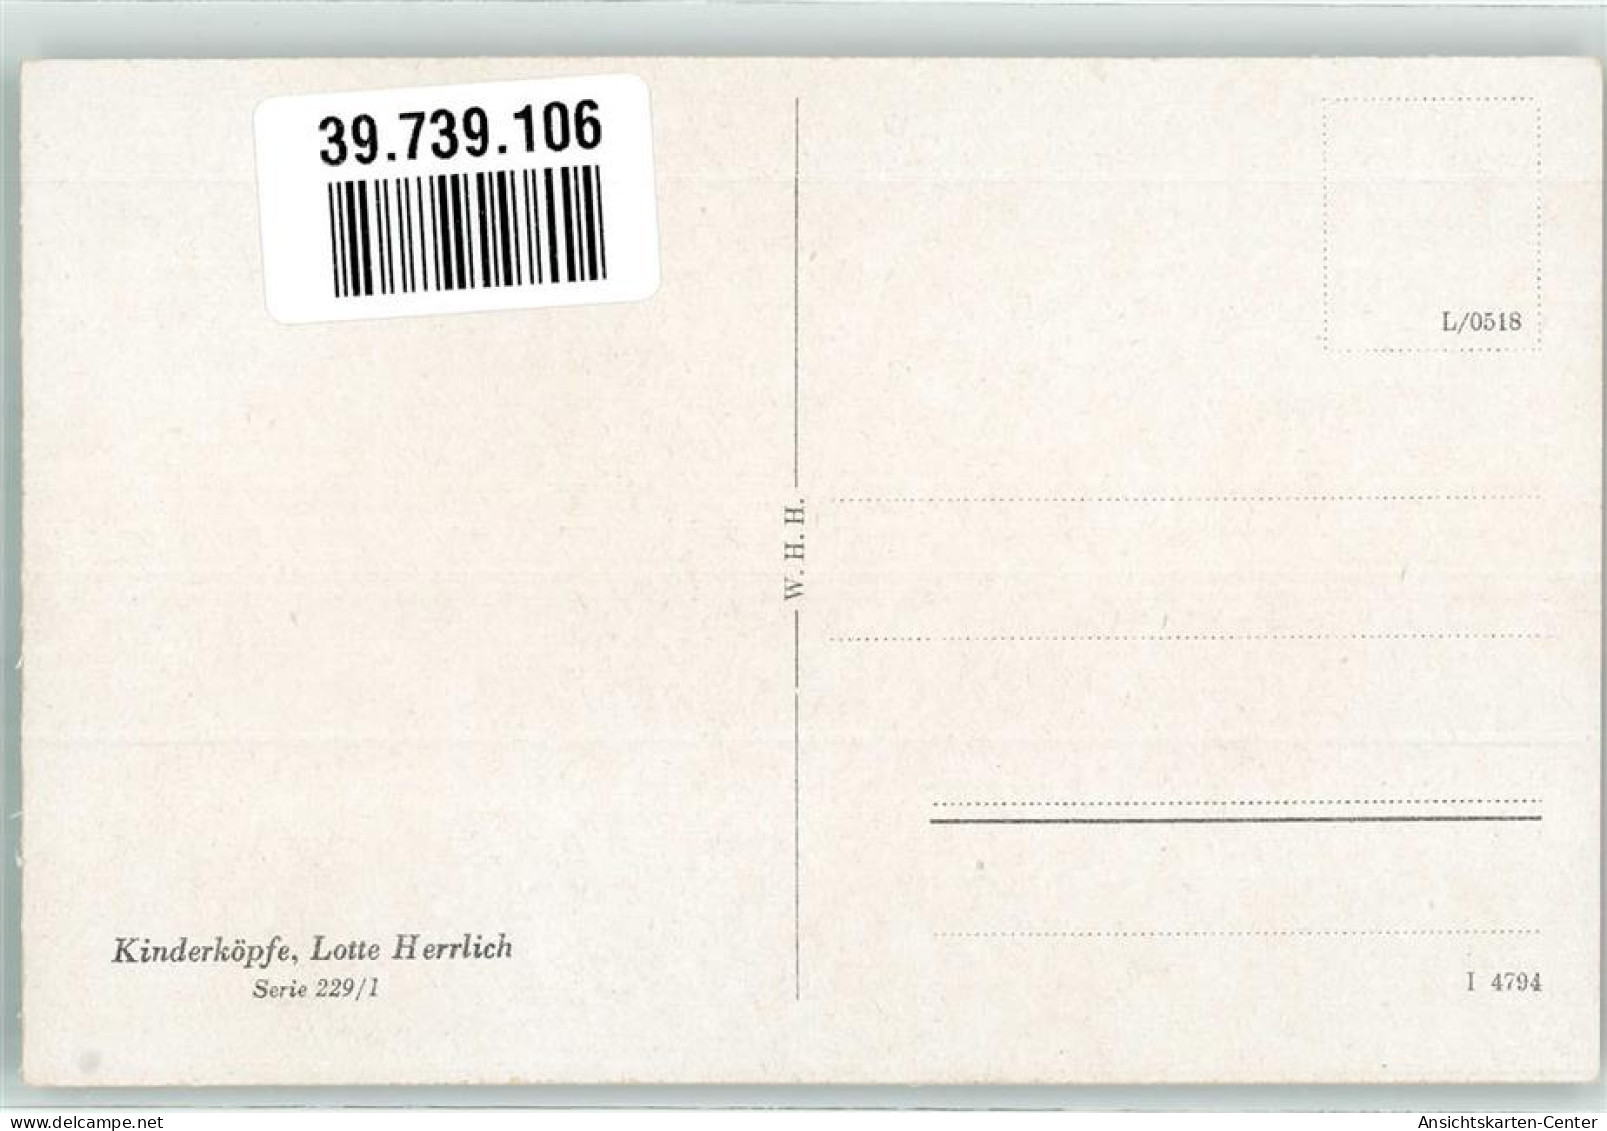 39739106 - Kinderkoepfe Serie 229/1 Verlag W.H.H. - Herrlich, Lotte